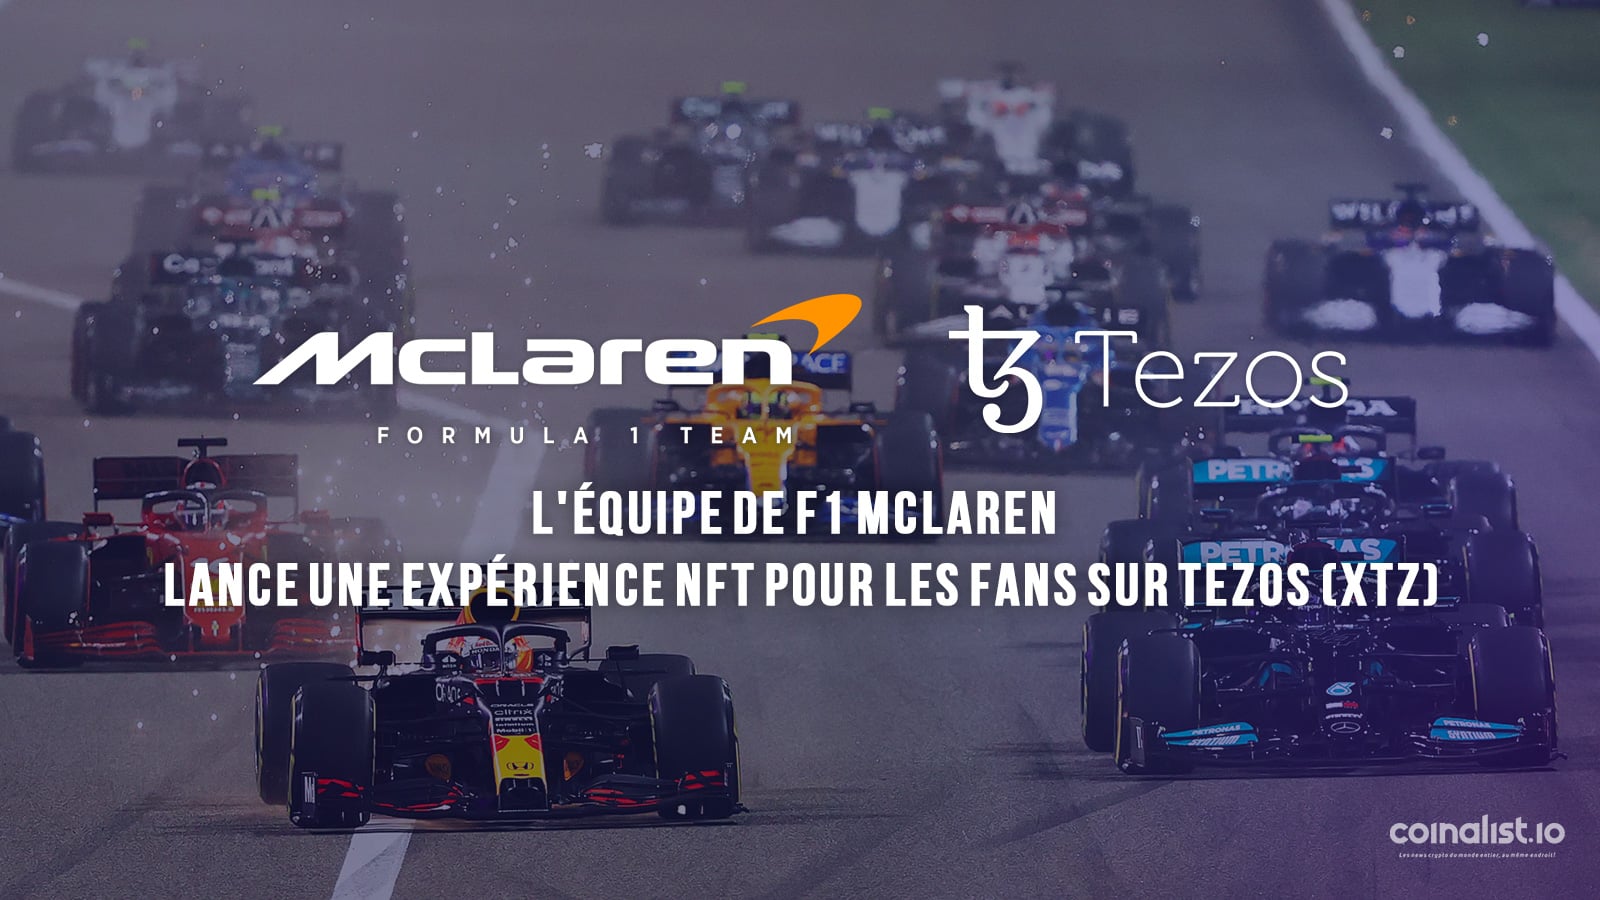 L'Équipe De F1 Mclaren Lance Une Expérience Nft Pour Les Fans Sur Tezos (Xtz) - Championnat Du Monde De Formule 1 2022